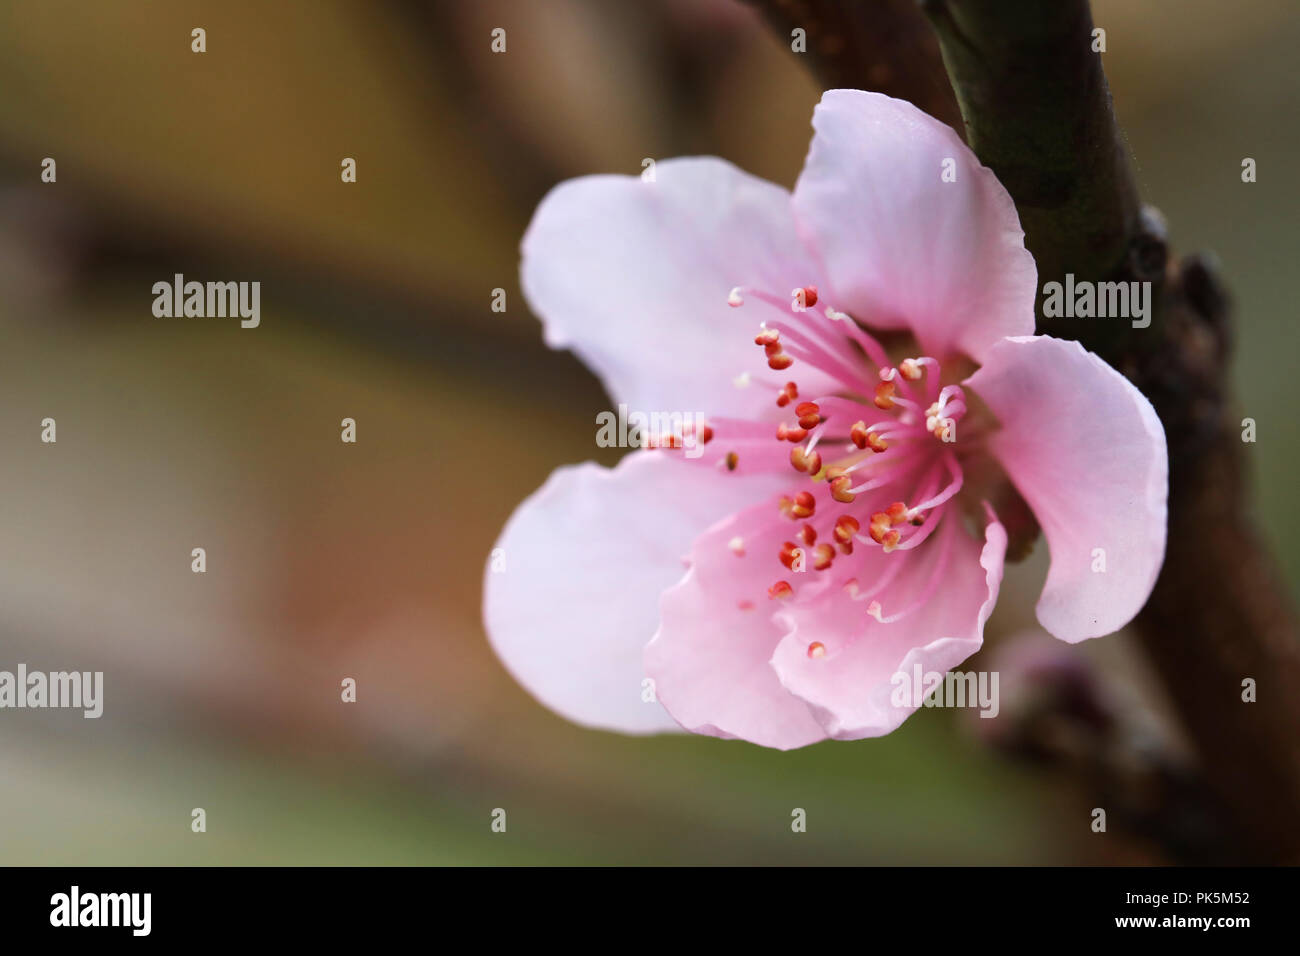 Makro Nahaufnahme einer neuen Jahreszeit Frühling Peach Blossom. Schönen zarten Rosa über ein weiches, blütenförmiges und Blume. Wechsel der Jahreszeit, Fruchtbarkeit Jahreszeiten Konzept mit f Stockfoto